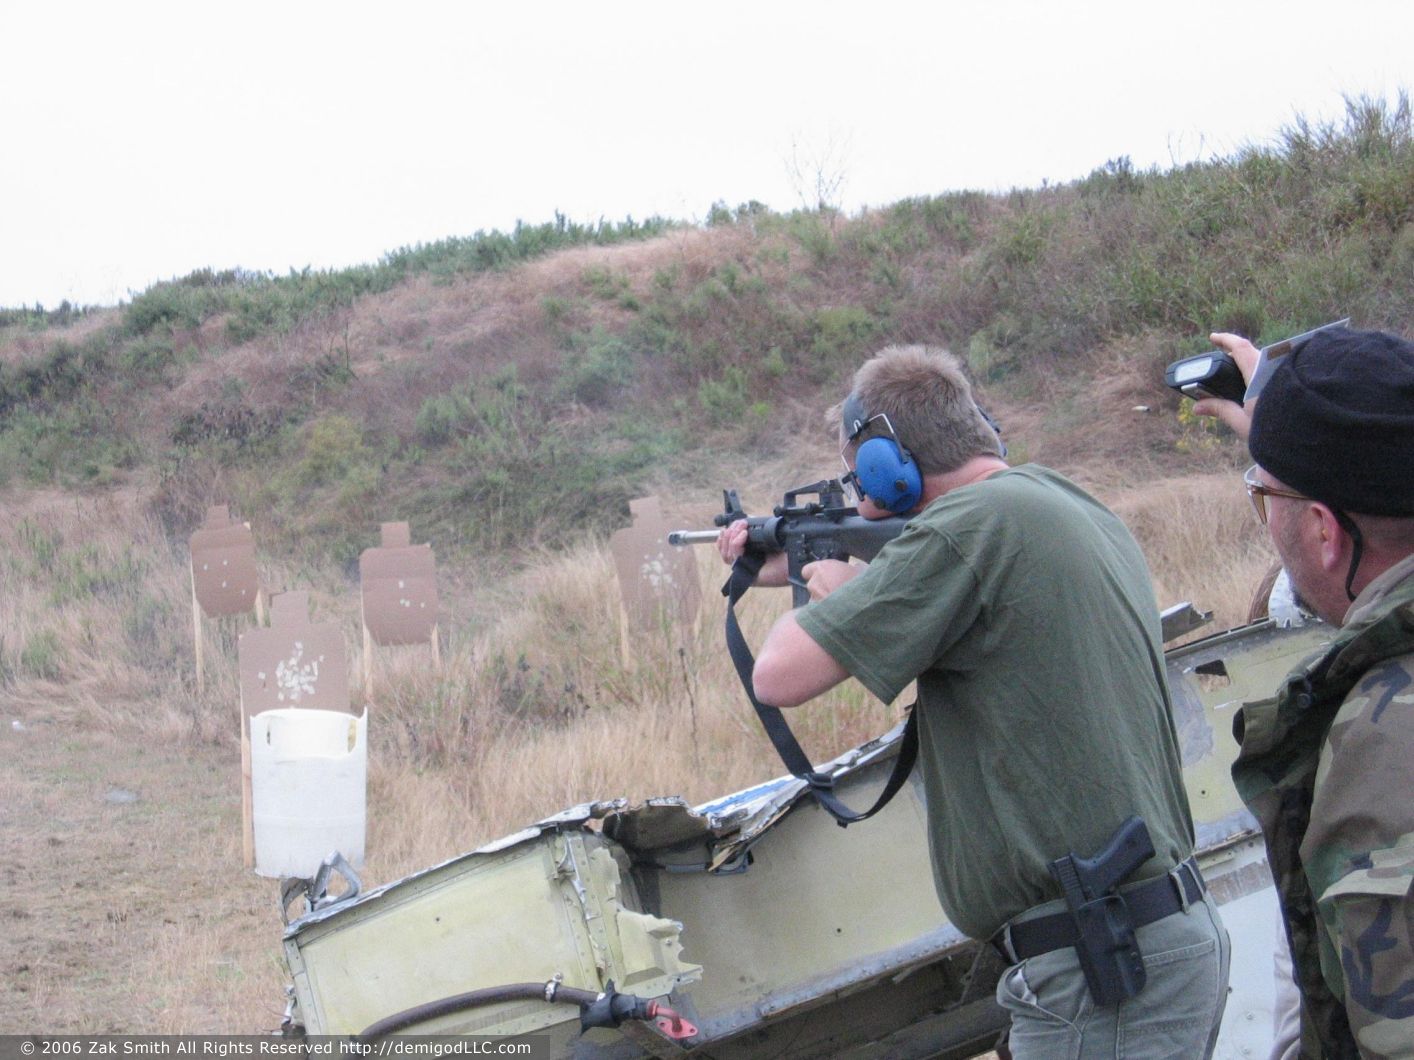 2004 Tiger Valley & Cavalry Arms 3Gun Match, Waco, TX
, photo 